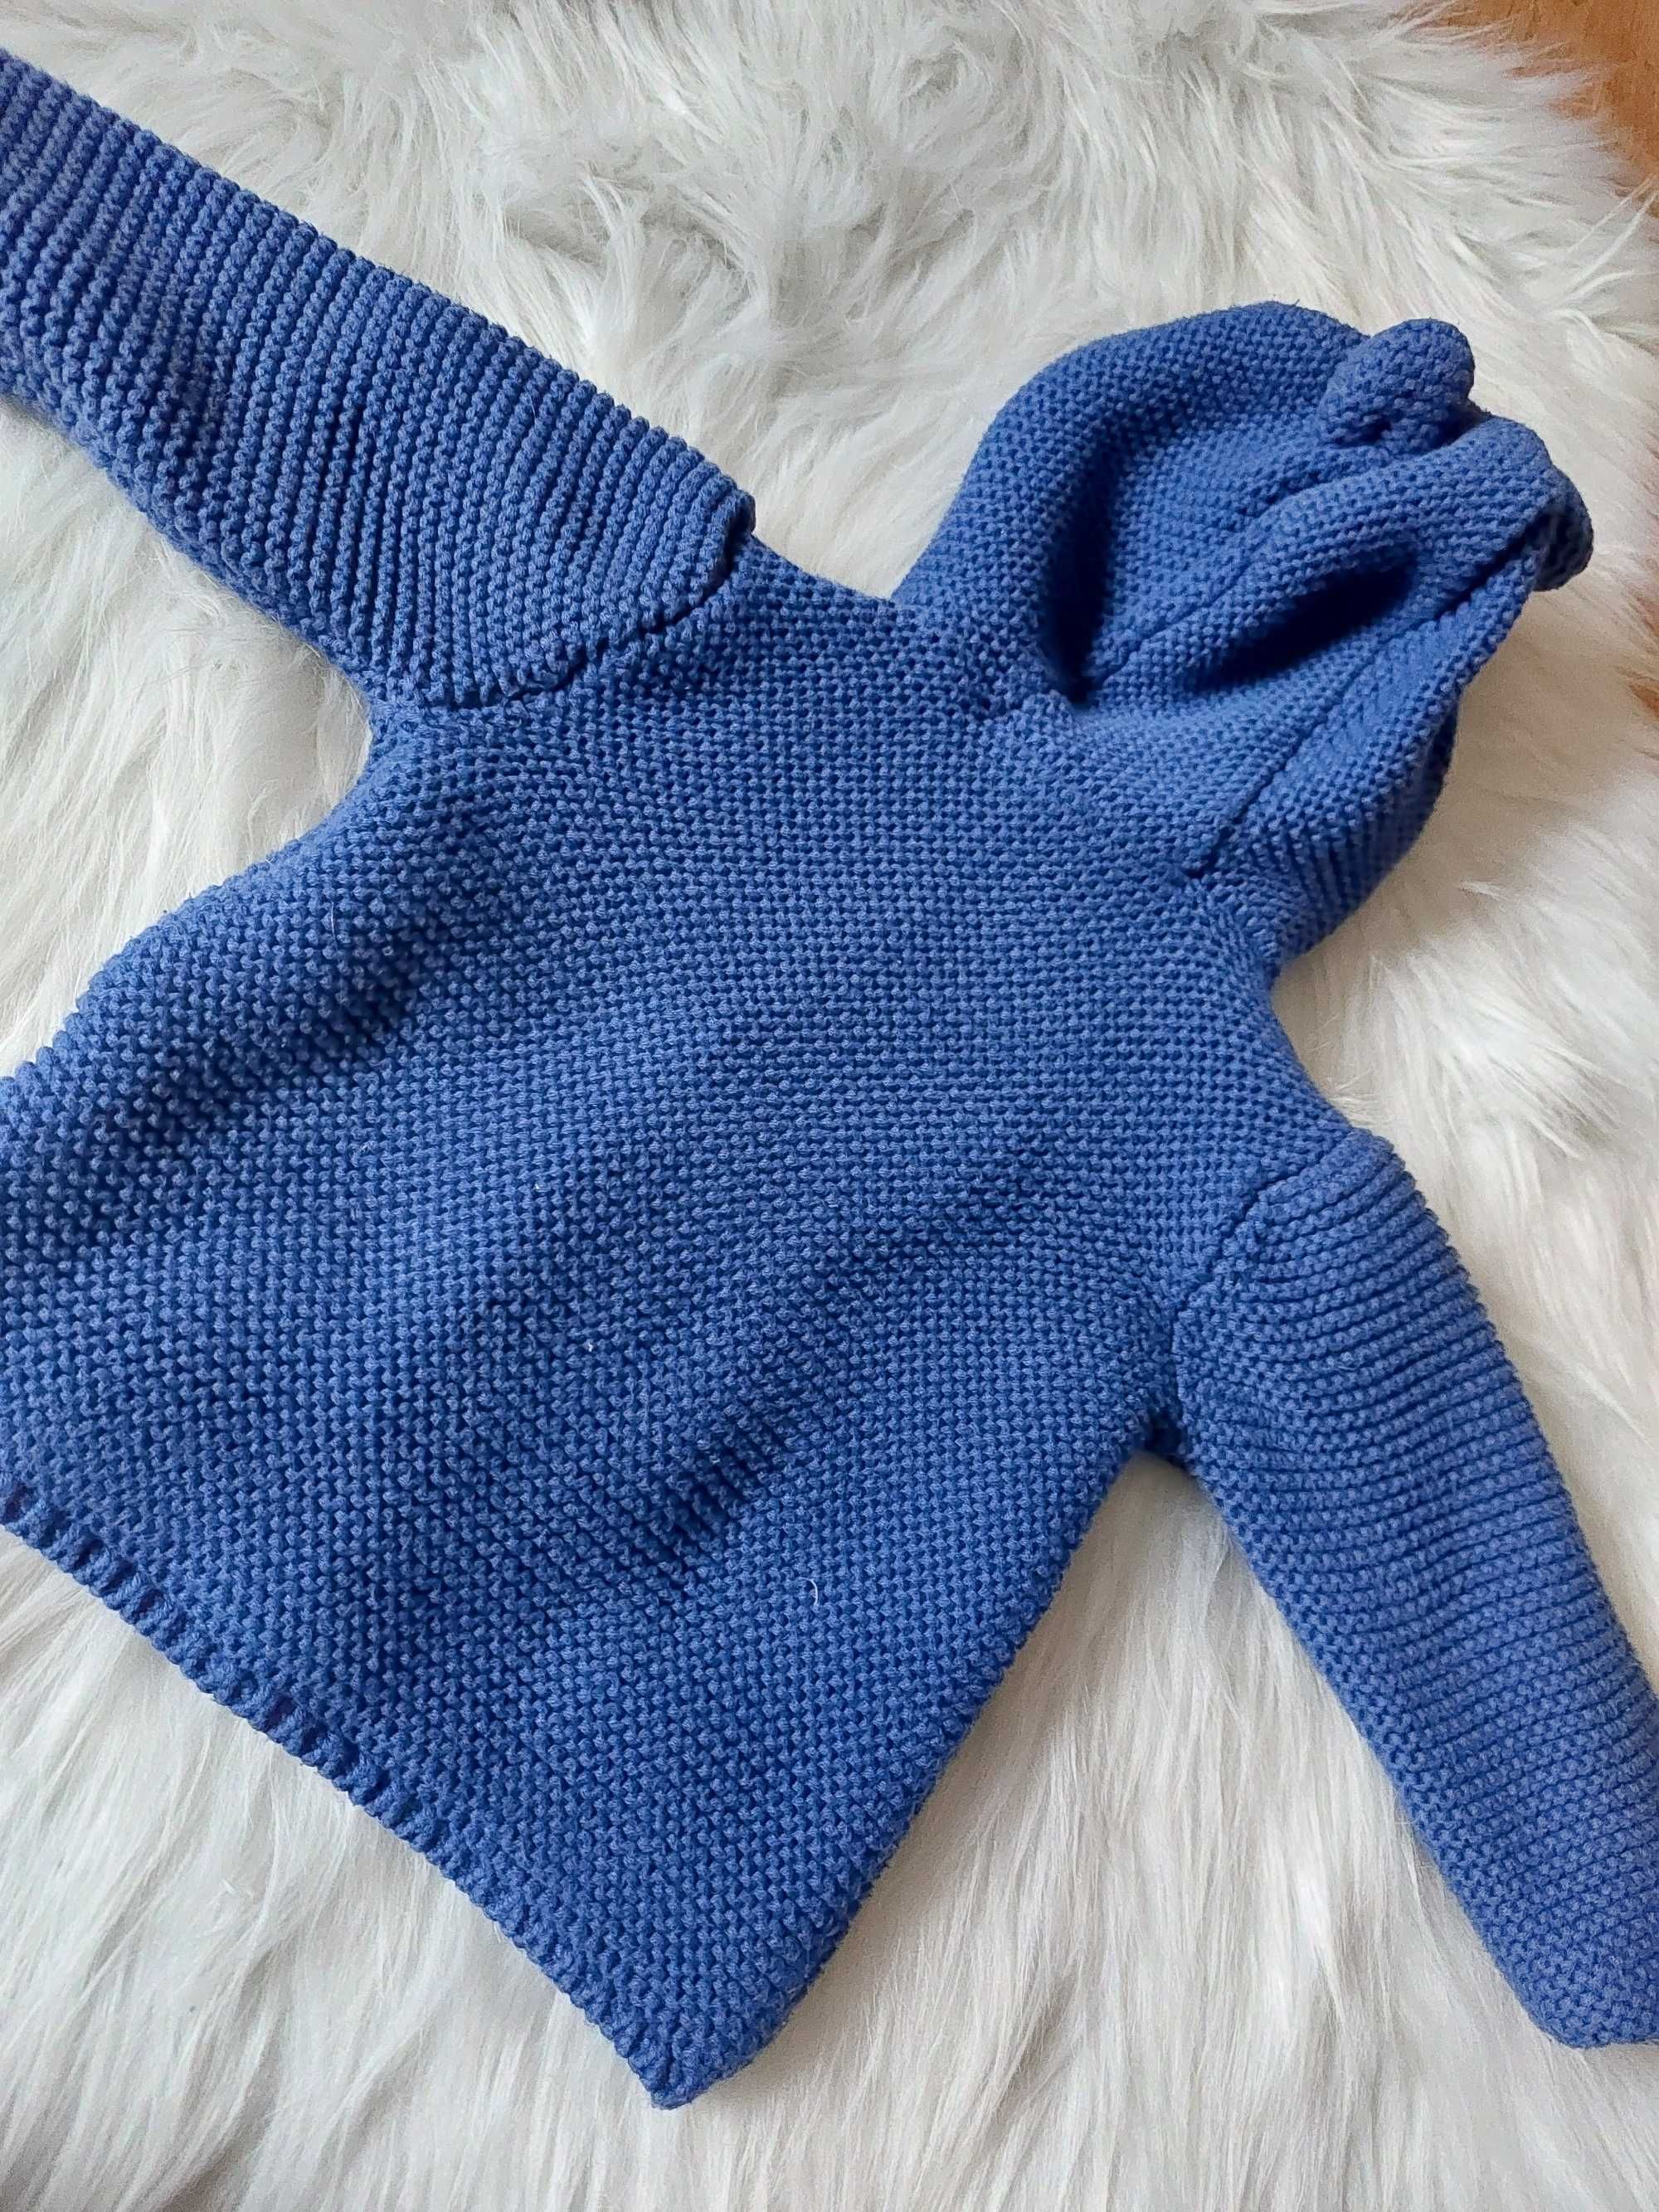 Sweter kardigan chlopięcy niebieski z uszkami na guziki 68 74 80